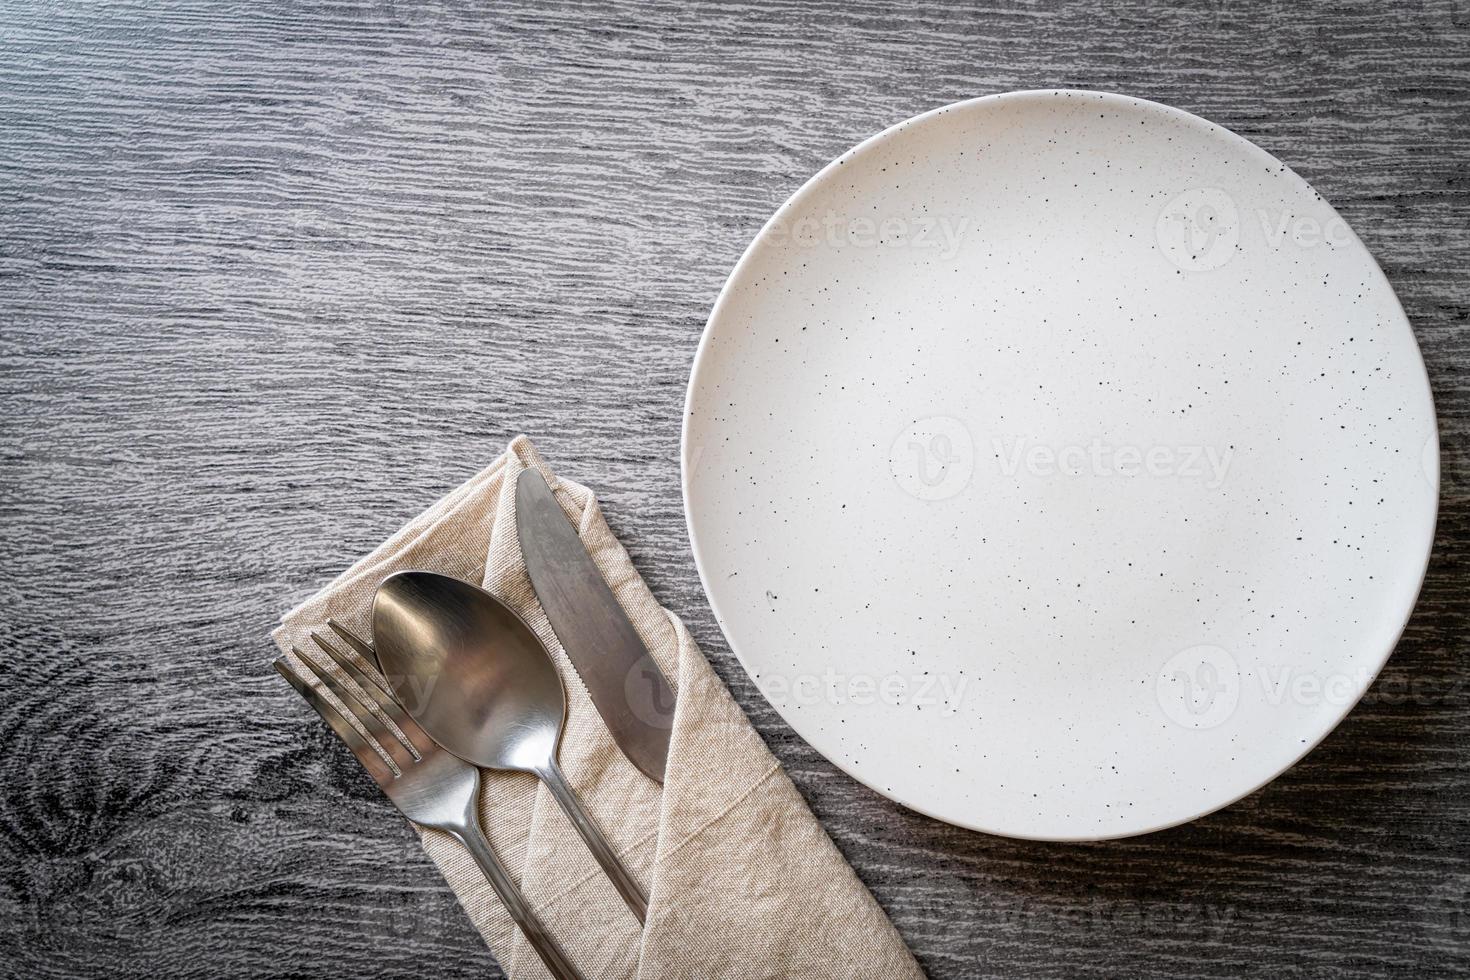 assiette ou plat vide avec couteau, fourchette et cuillère photo